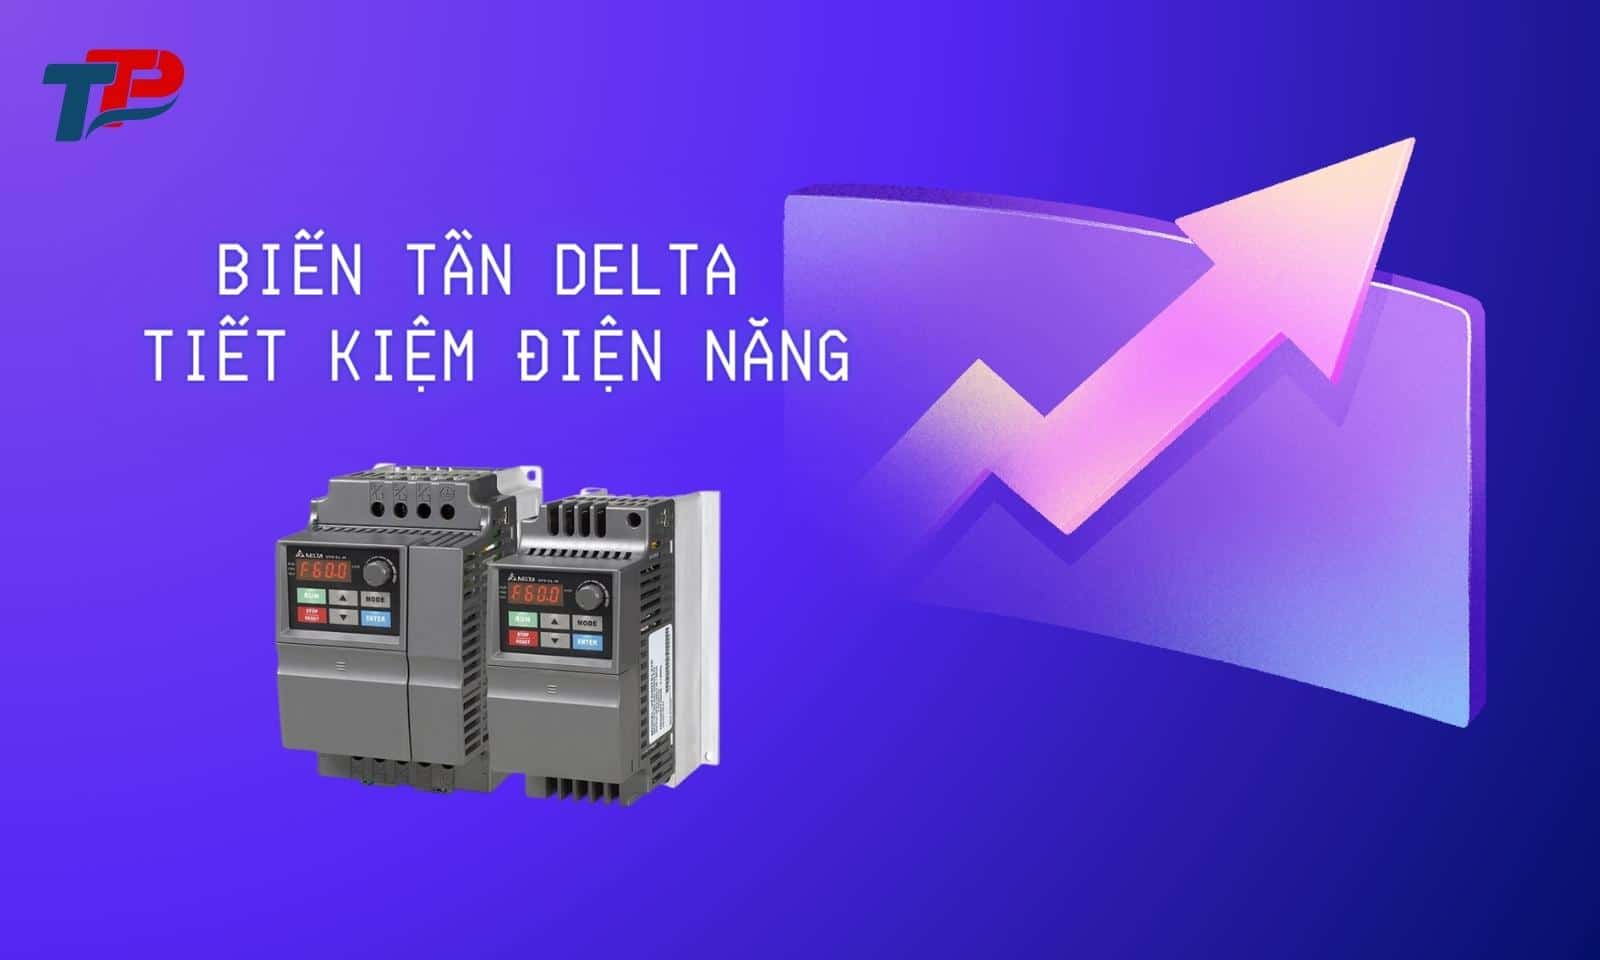 Biến tần Delta tiết kiệm điện năng